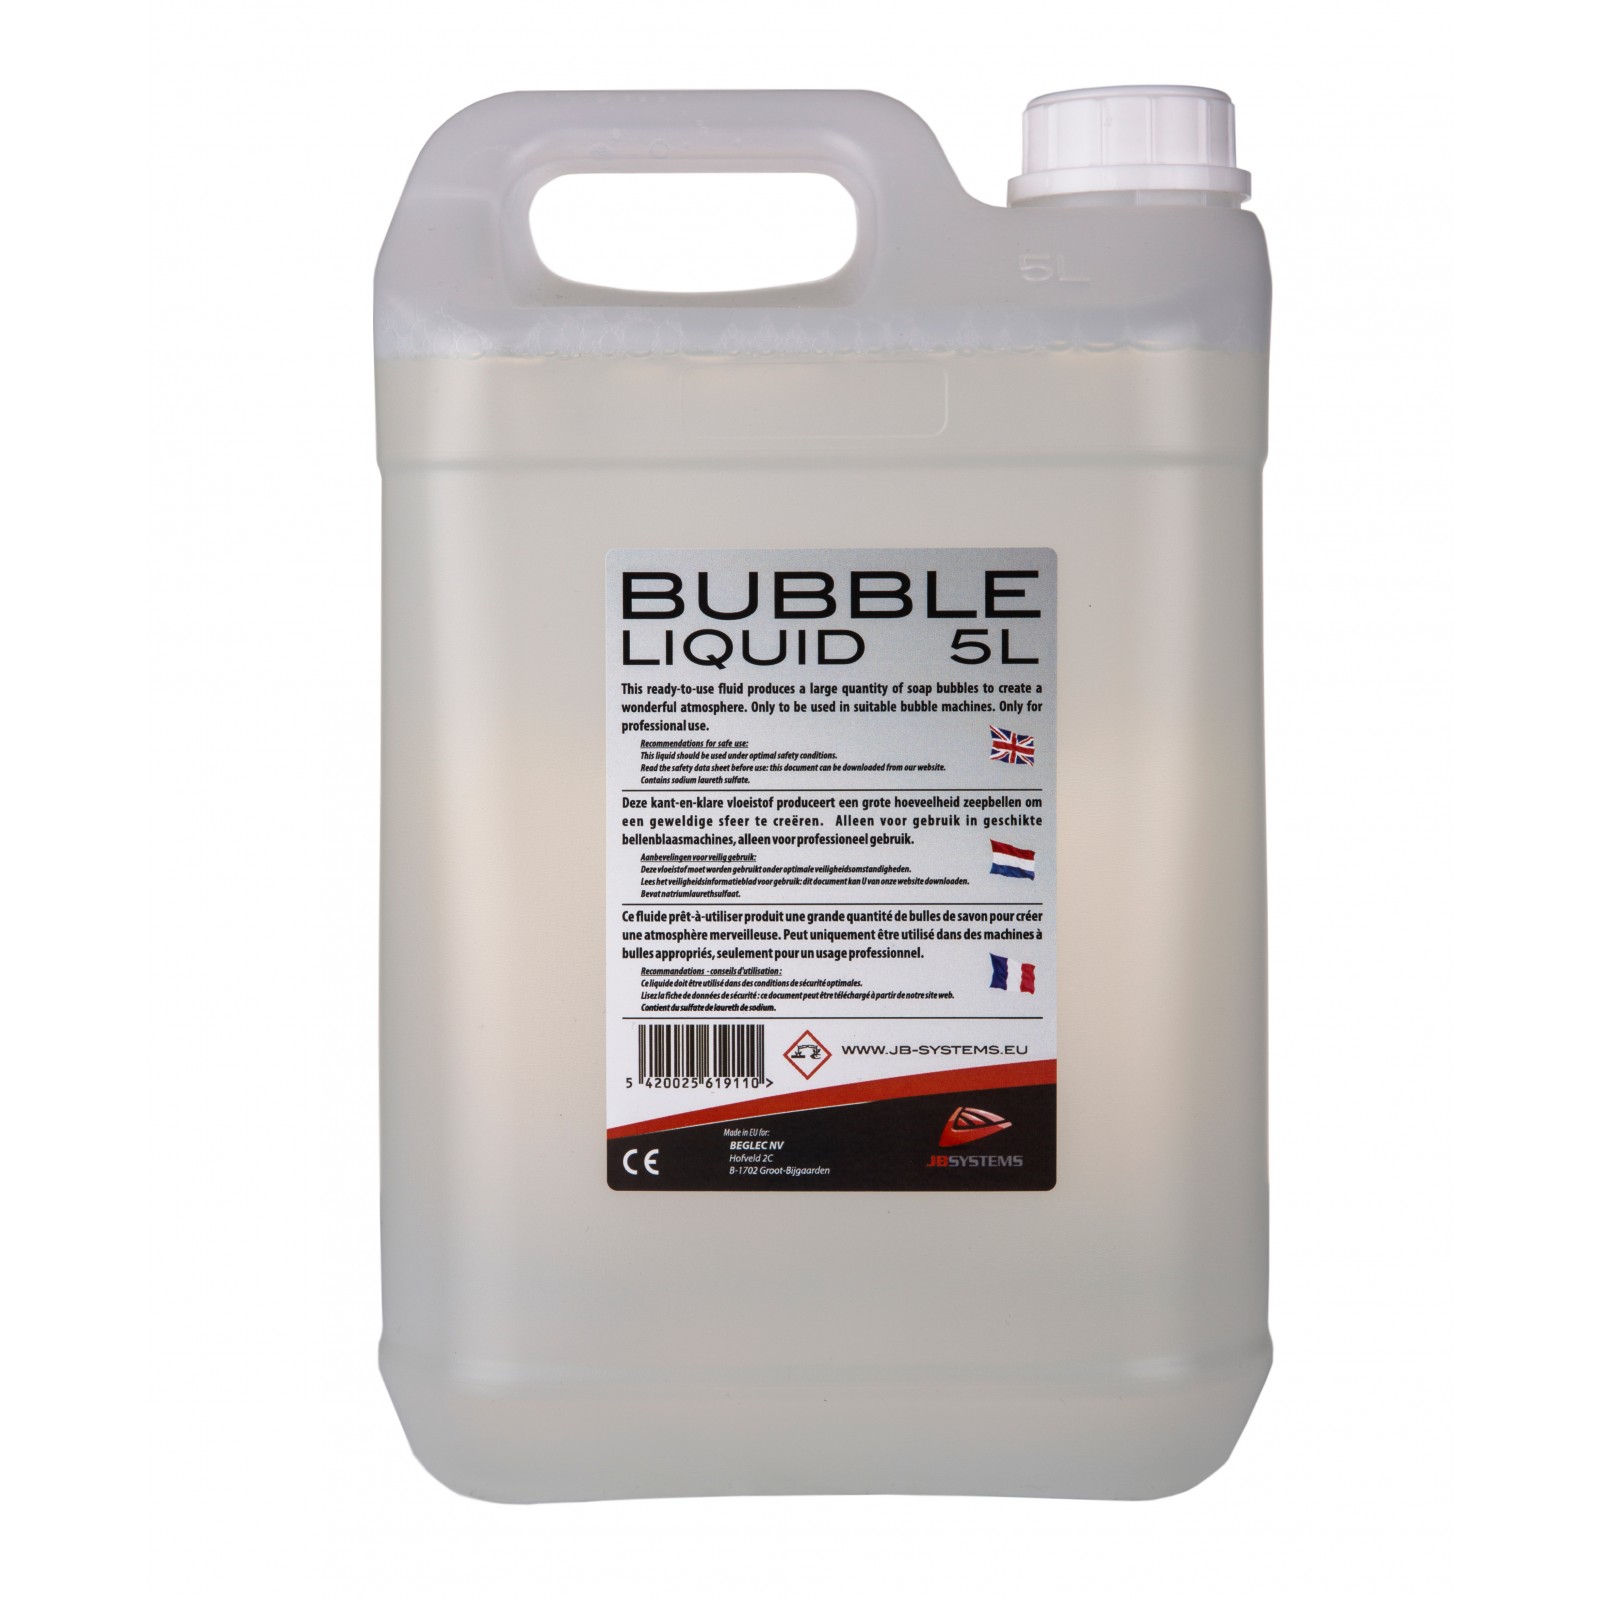 BUBBLE LIQUID 5L, 5L liquid for bubble machine